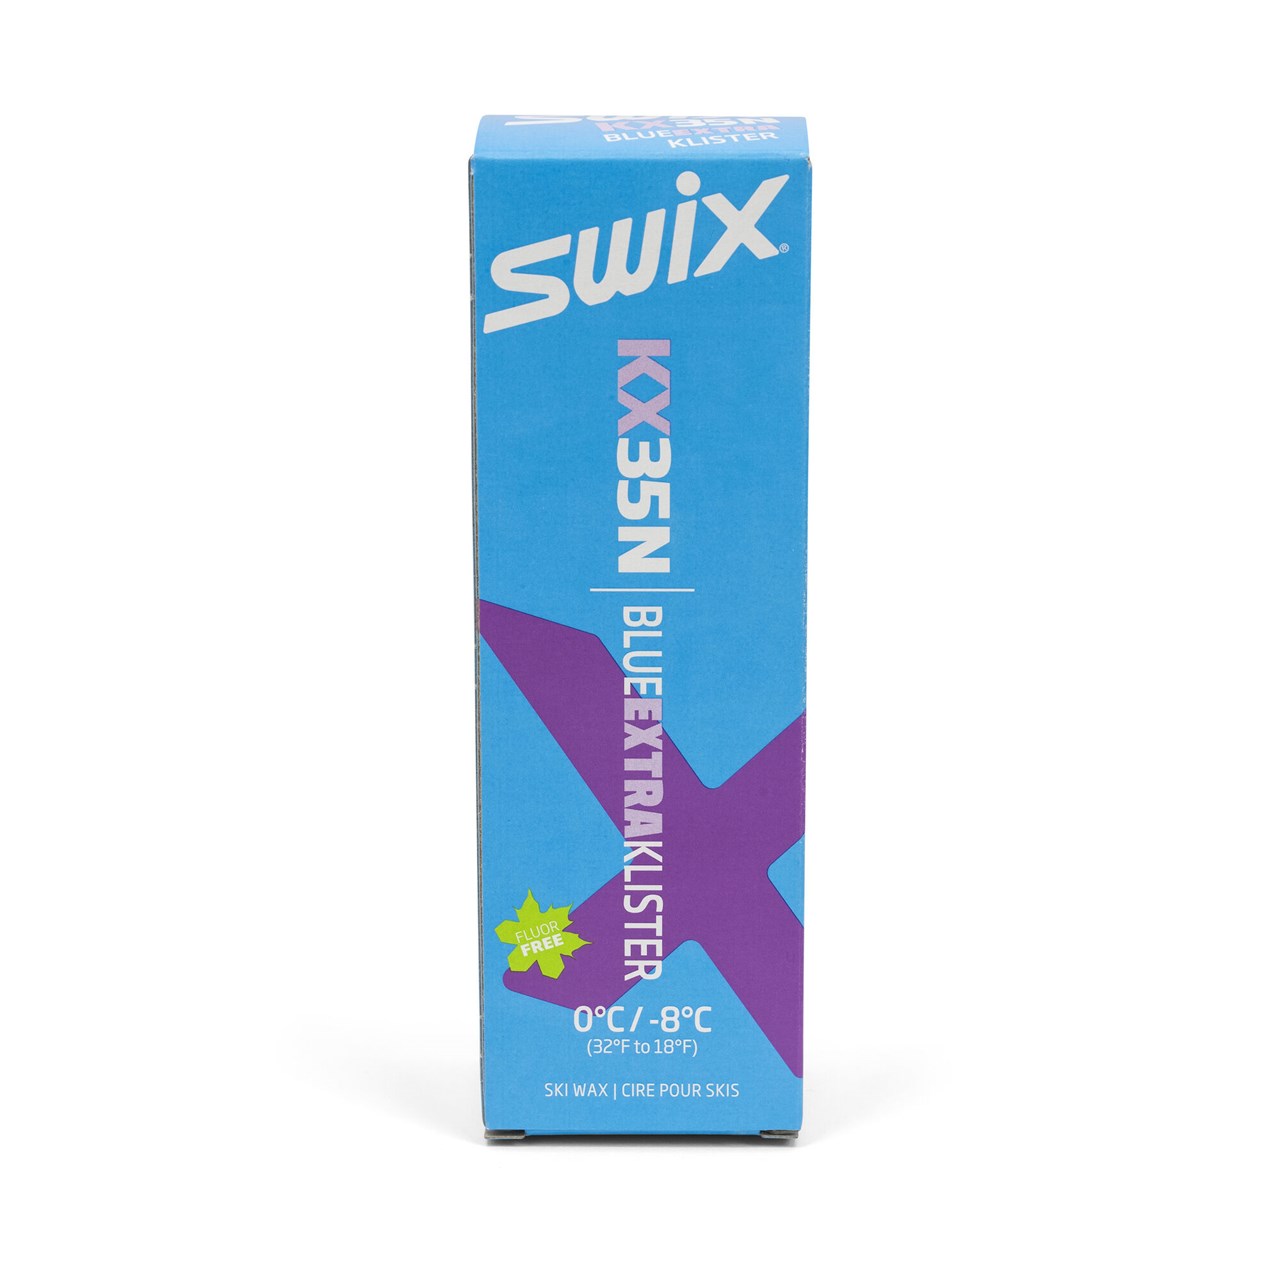 SWIX KX35N Blue Extra Klister, 0°C to -8°C